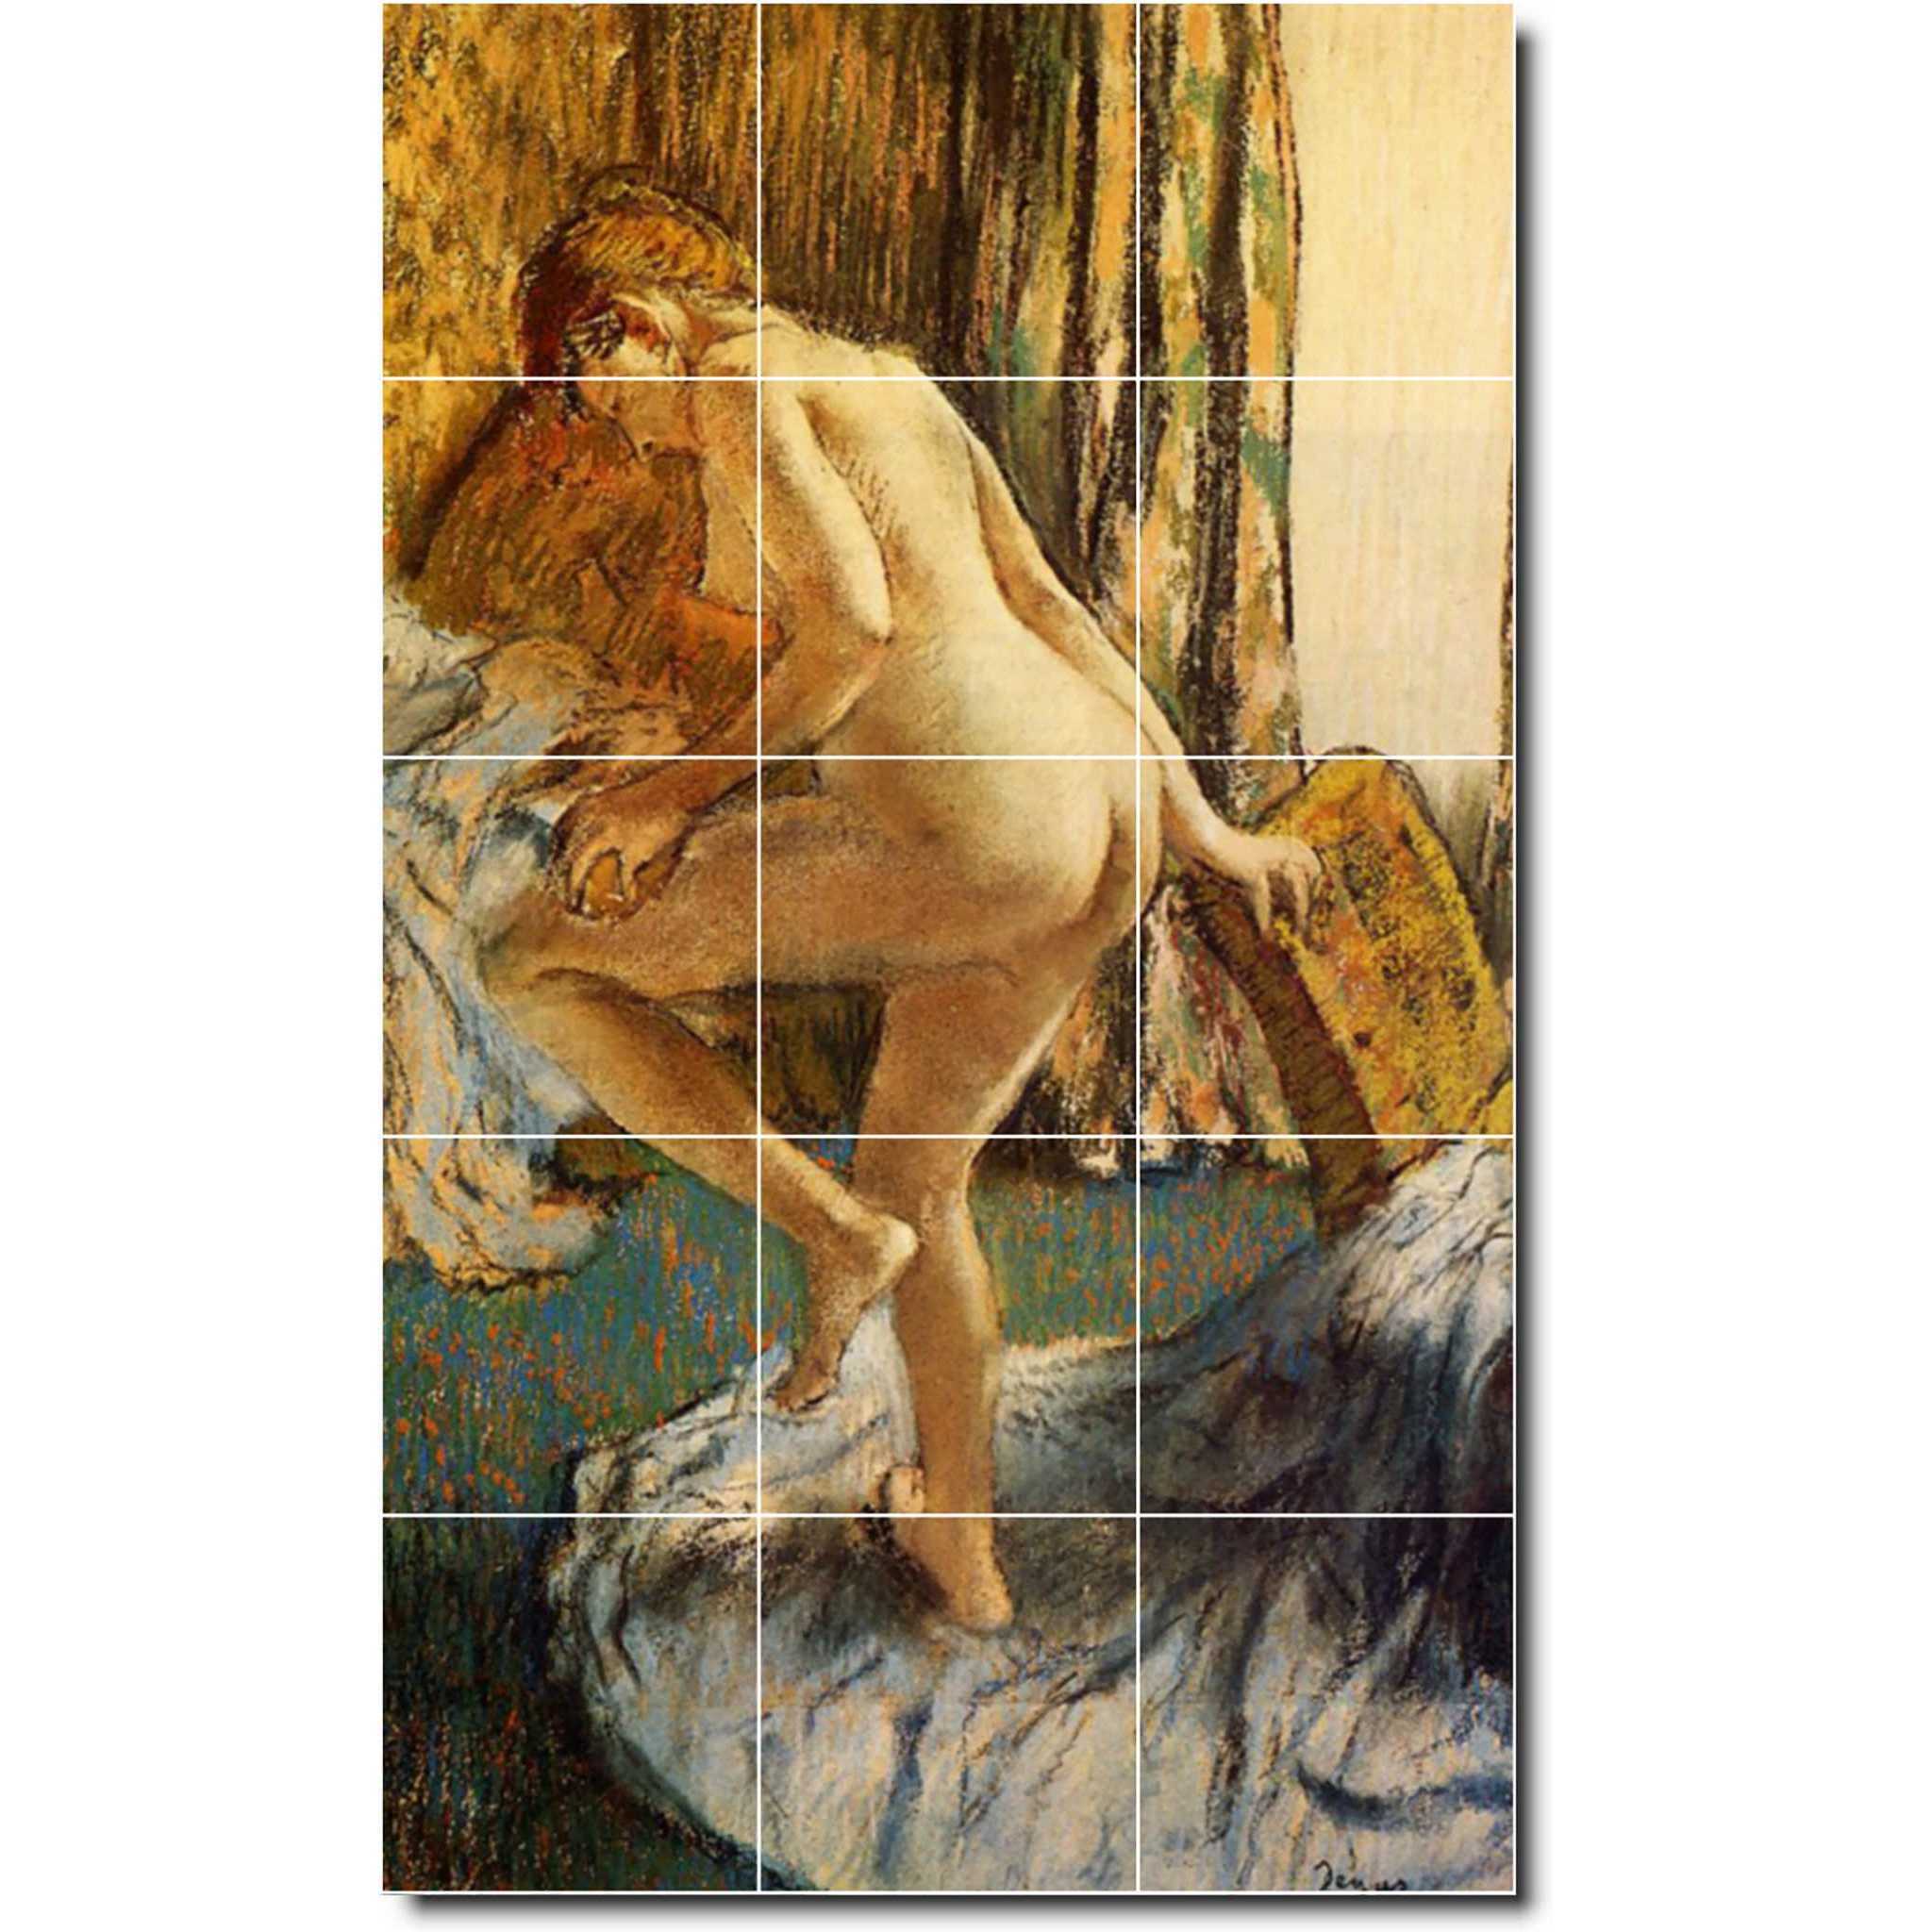 edgar degas nude painting ceramic tile mural p02366